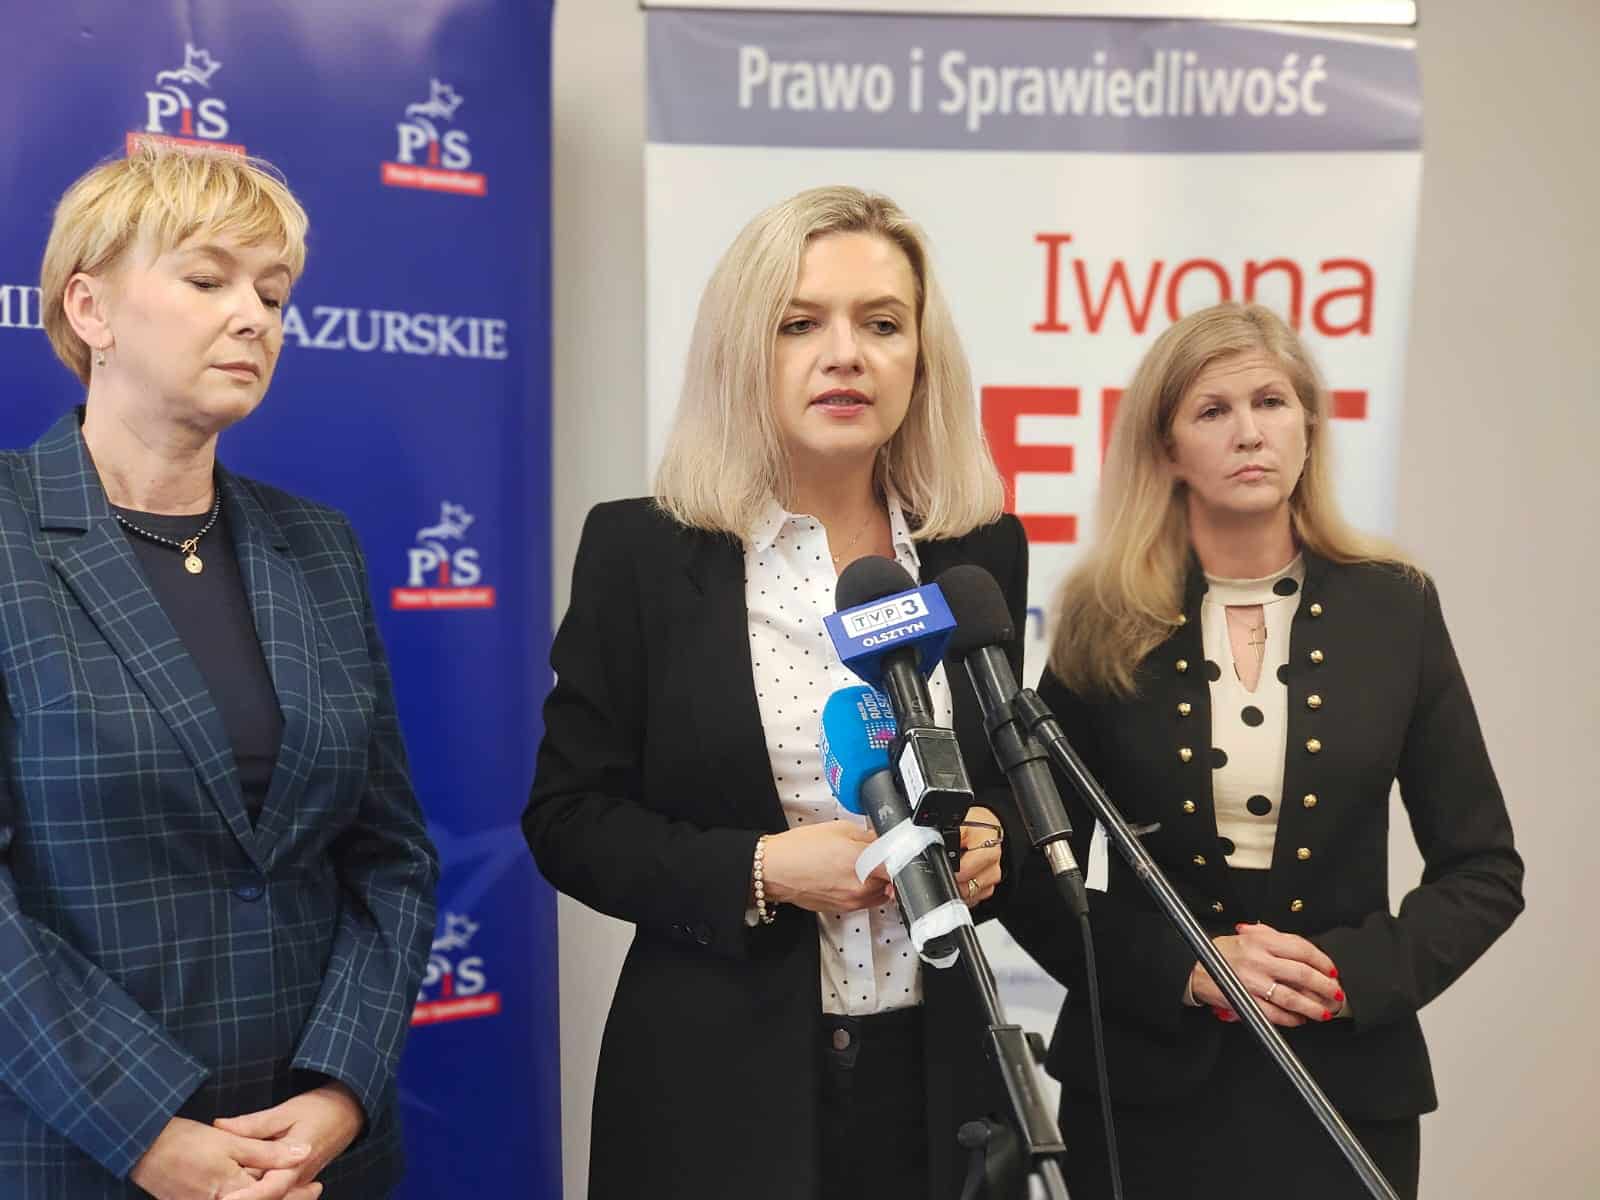 Bezpieczeństwo kobiet w Polsce? Iwona Arent i koleżanki z PiS przedstawiają plany polityka Olsztyn, Wiadomości, zShowcase